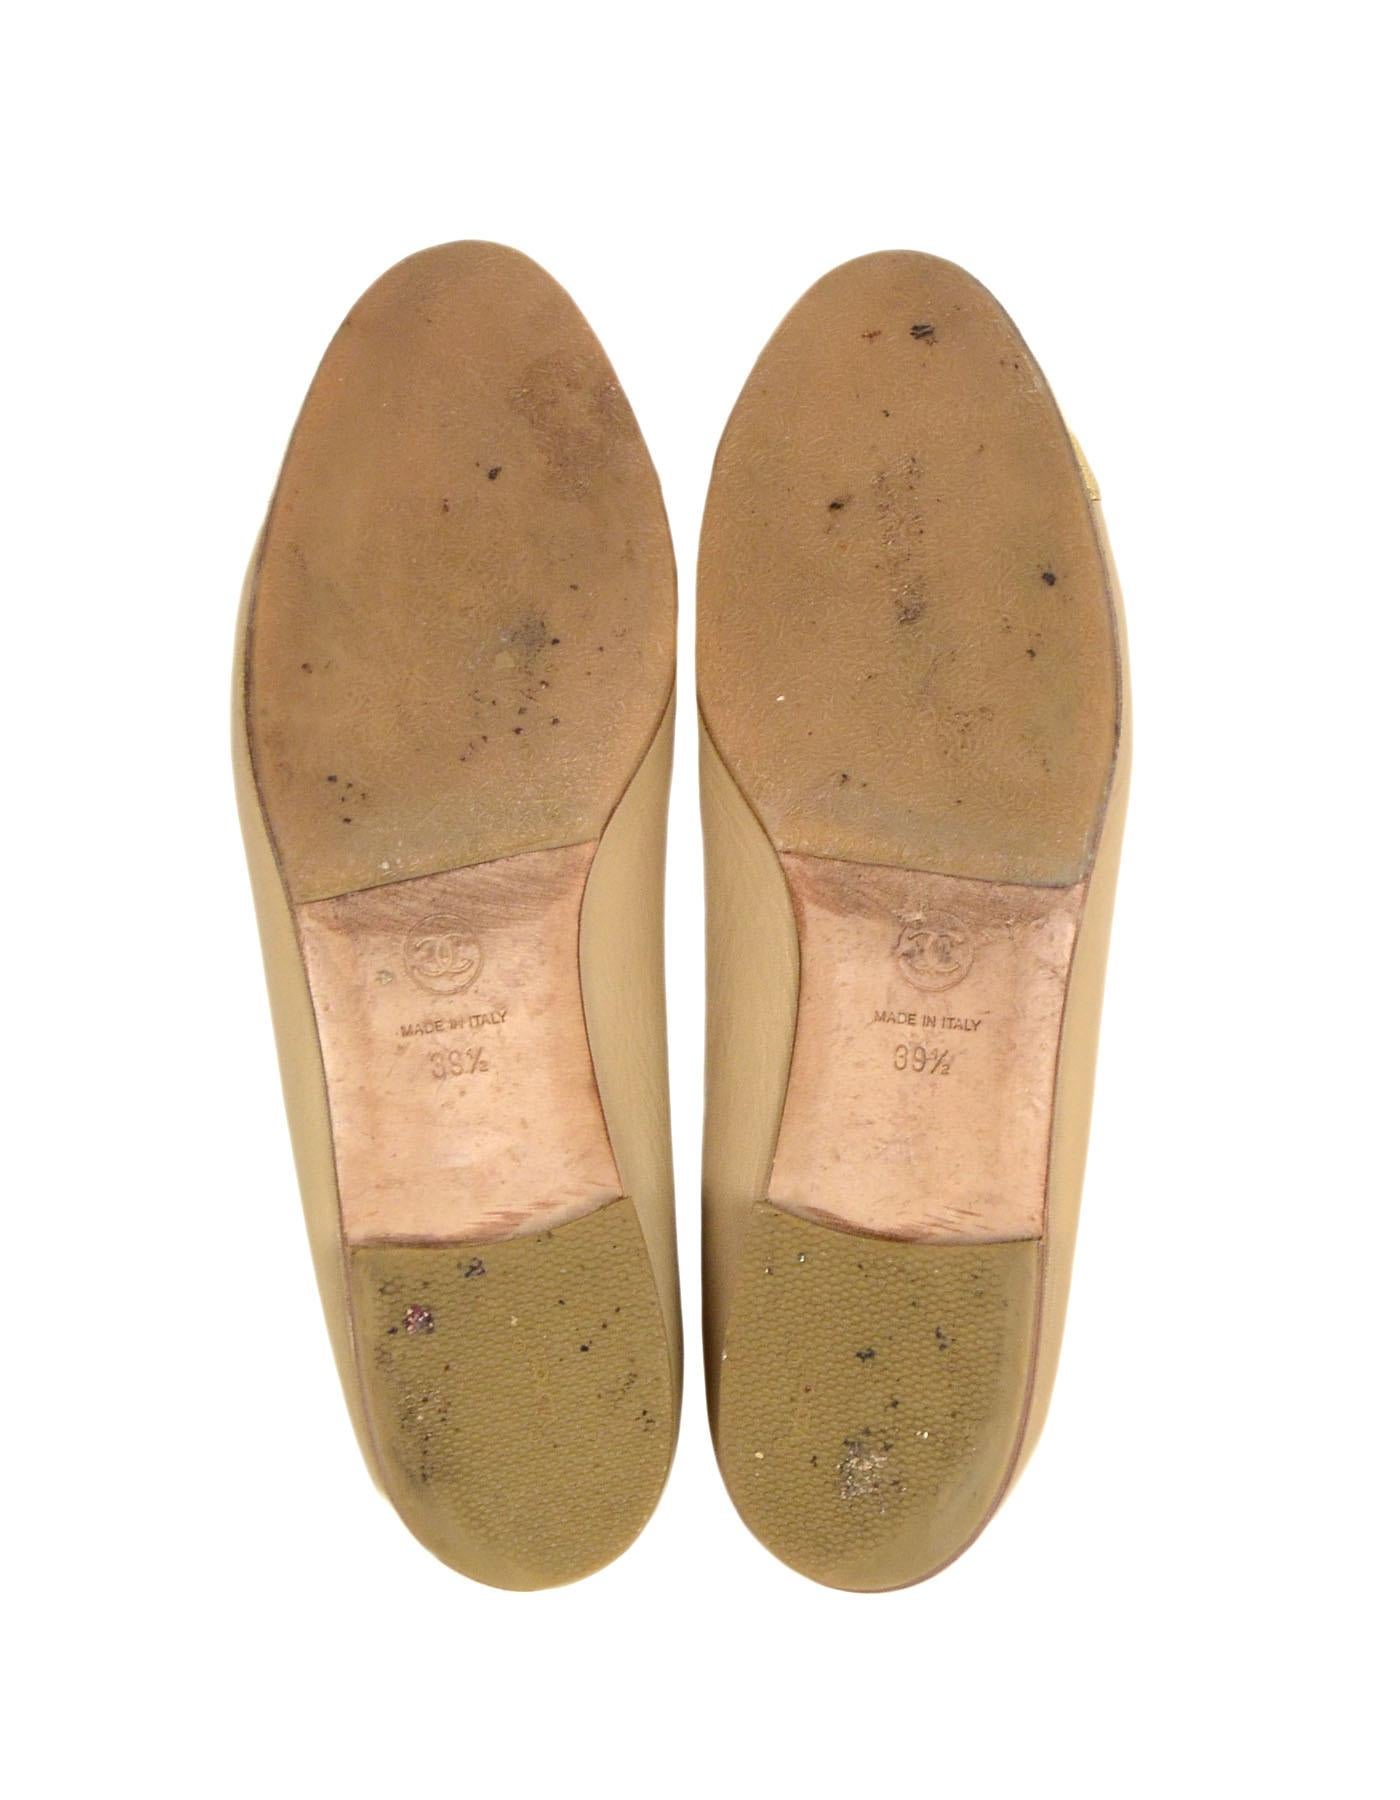 Chanel Beige/Gold Leather Cap Toe CC Ballet Flats sz 39.5 5